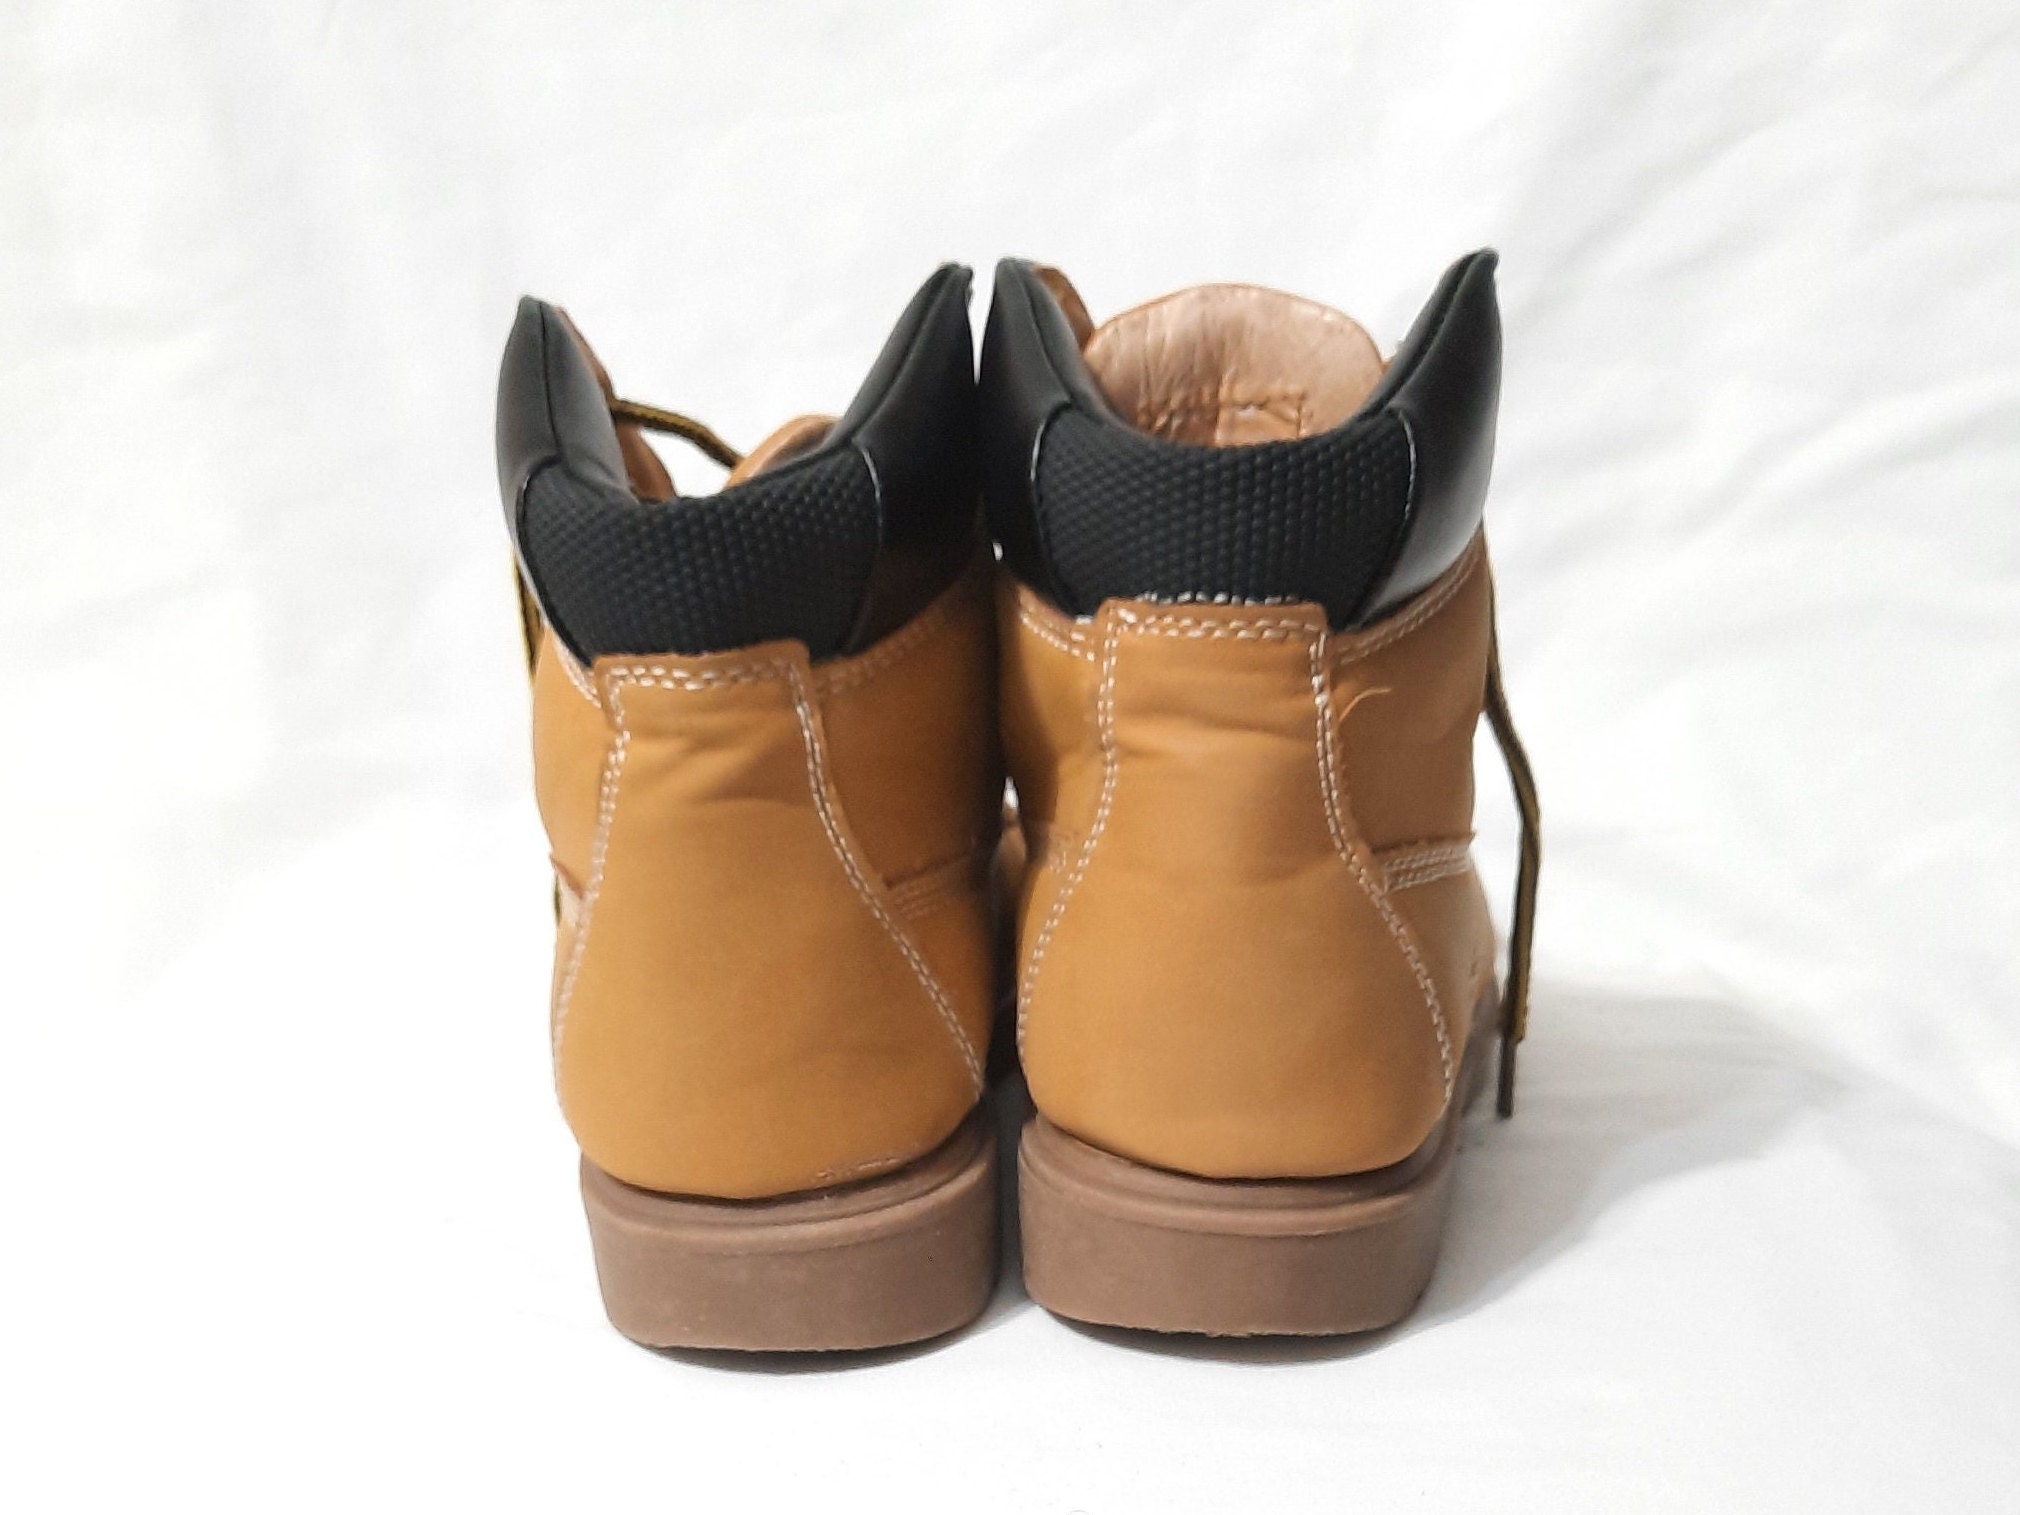 Schoenen Jongensschoenen Laarzen SZ 4.5\Vintage Boys Deer Stags Thinsulate Boots 